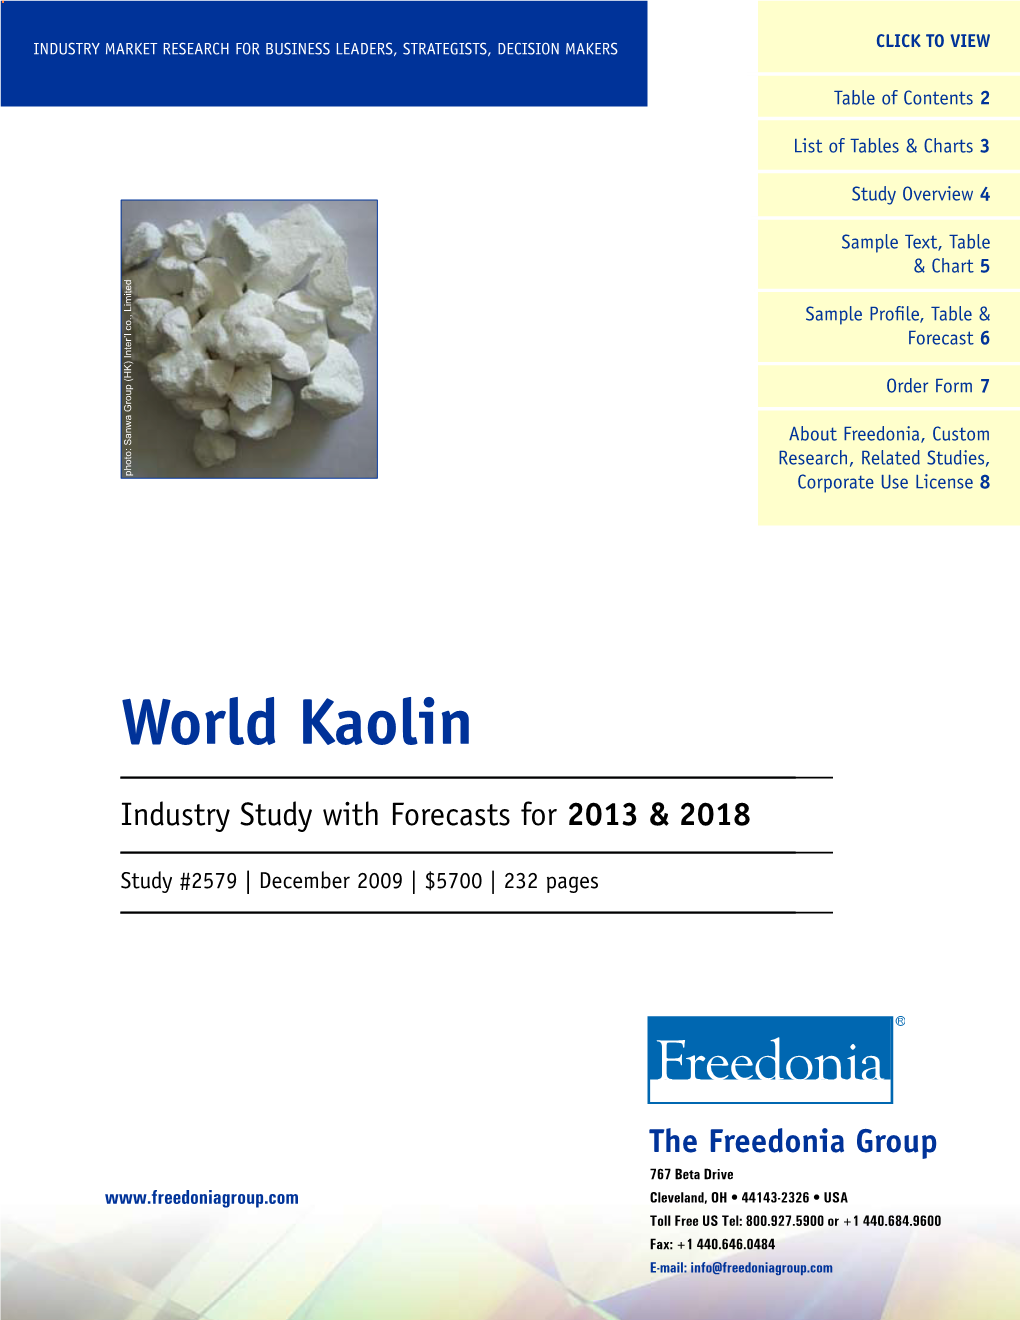 World Kaolin